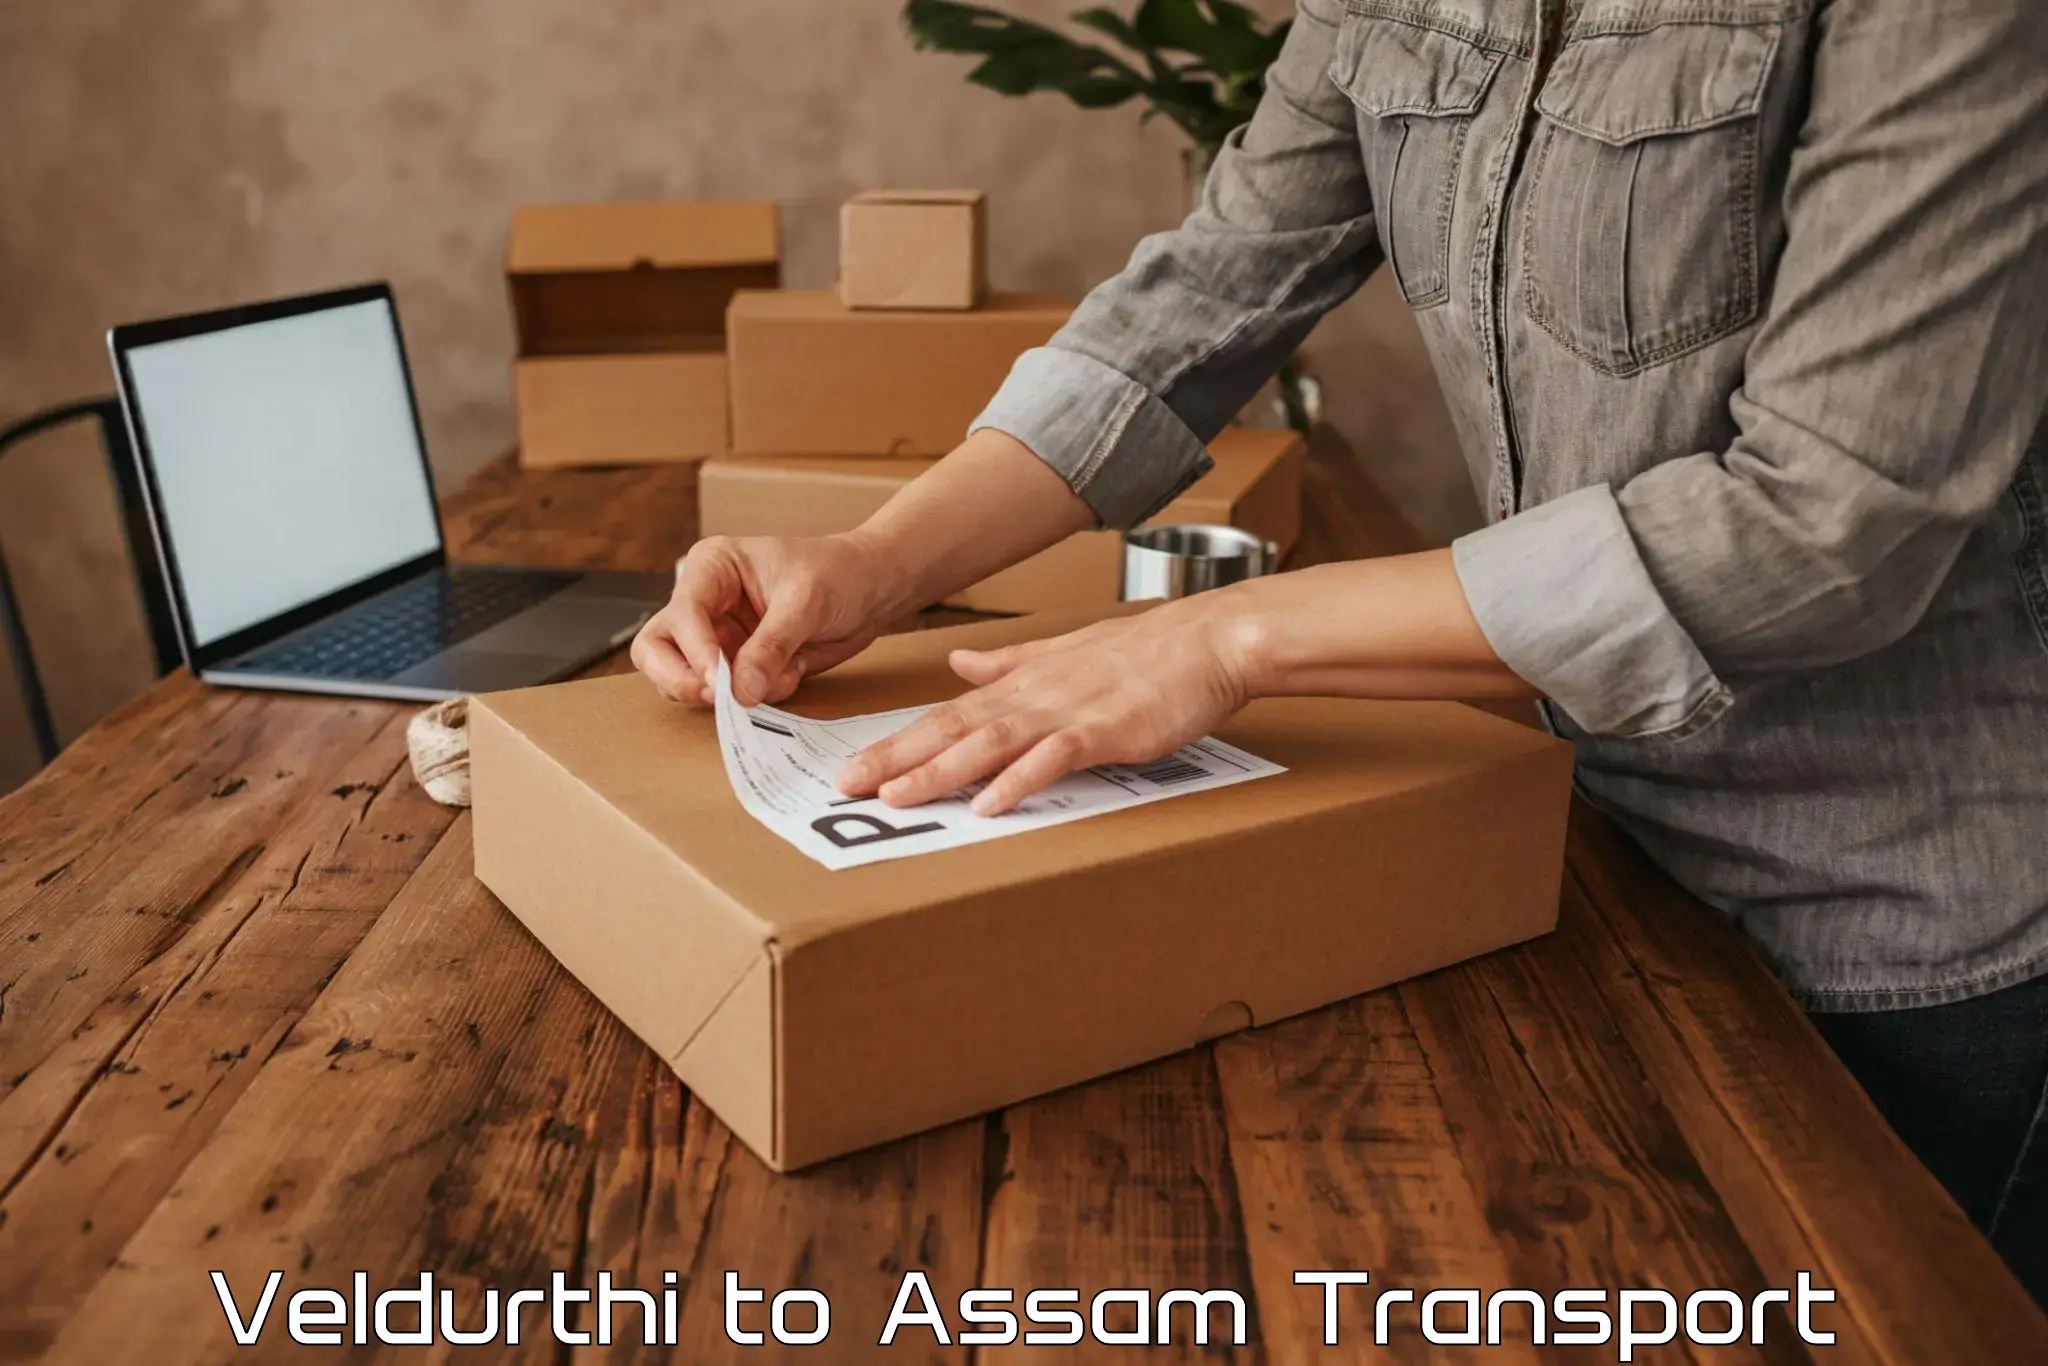 Express transport services Veldurthi to Assam